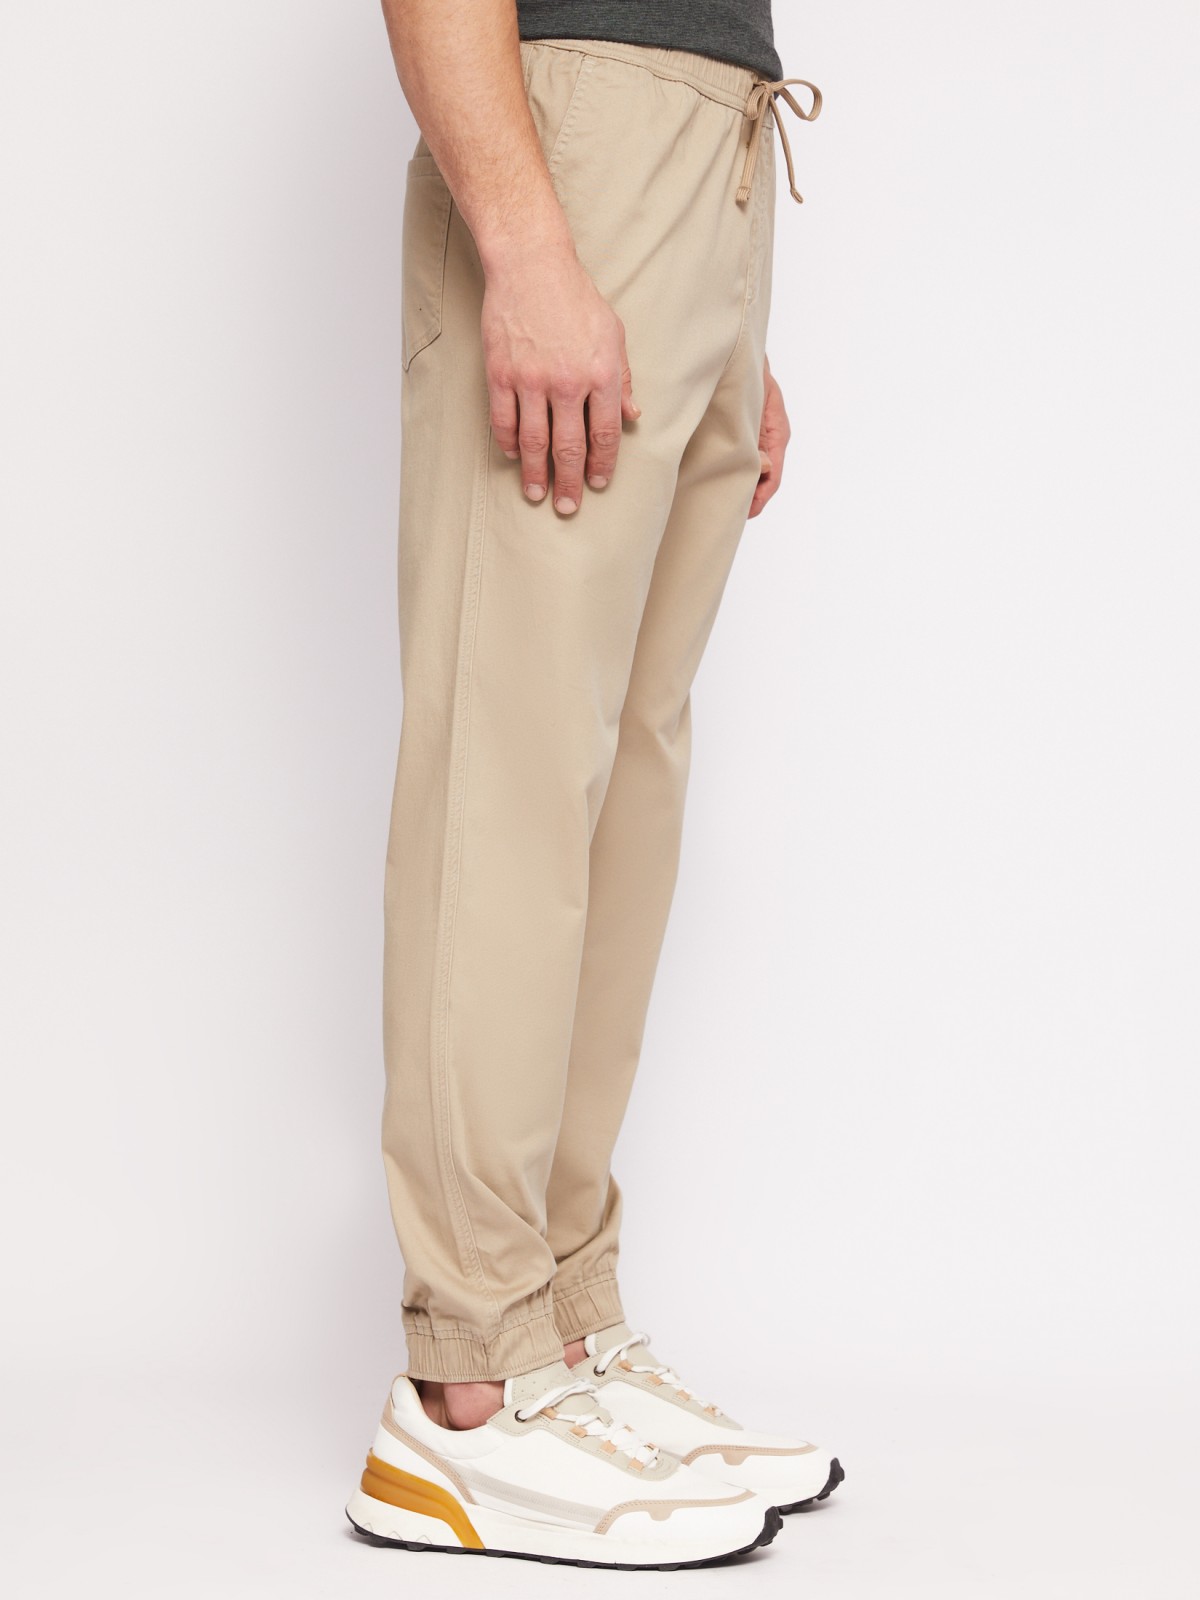 Прямые брюки-джоггеры из хлопка на резинке zolla N1421730L012, цвет бежевый, размер 34 - фото 3